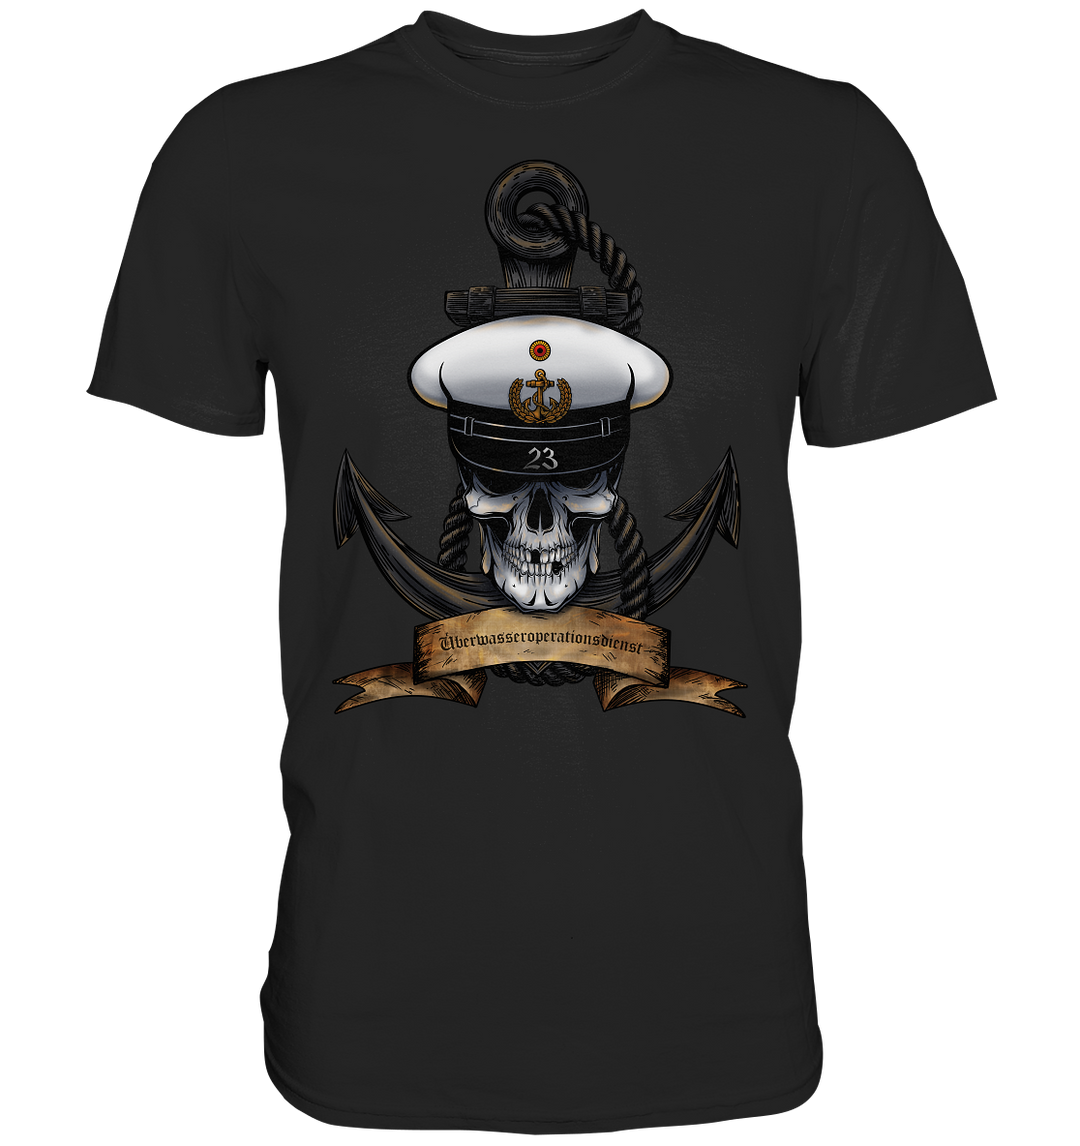 "Marine 23 - Überwasseroperationsdienst" - Premium Shirt